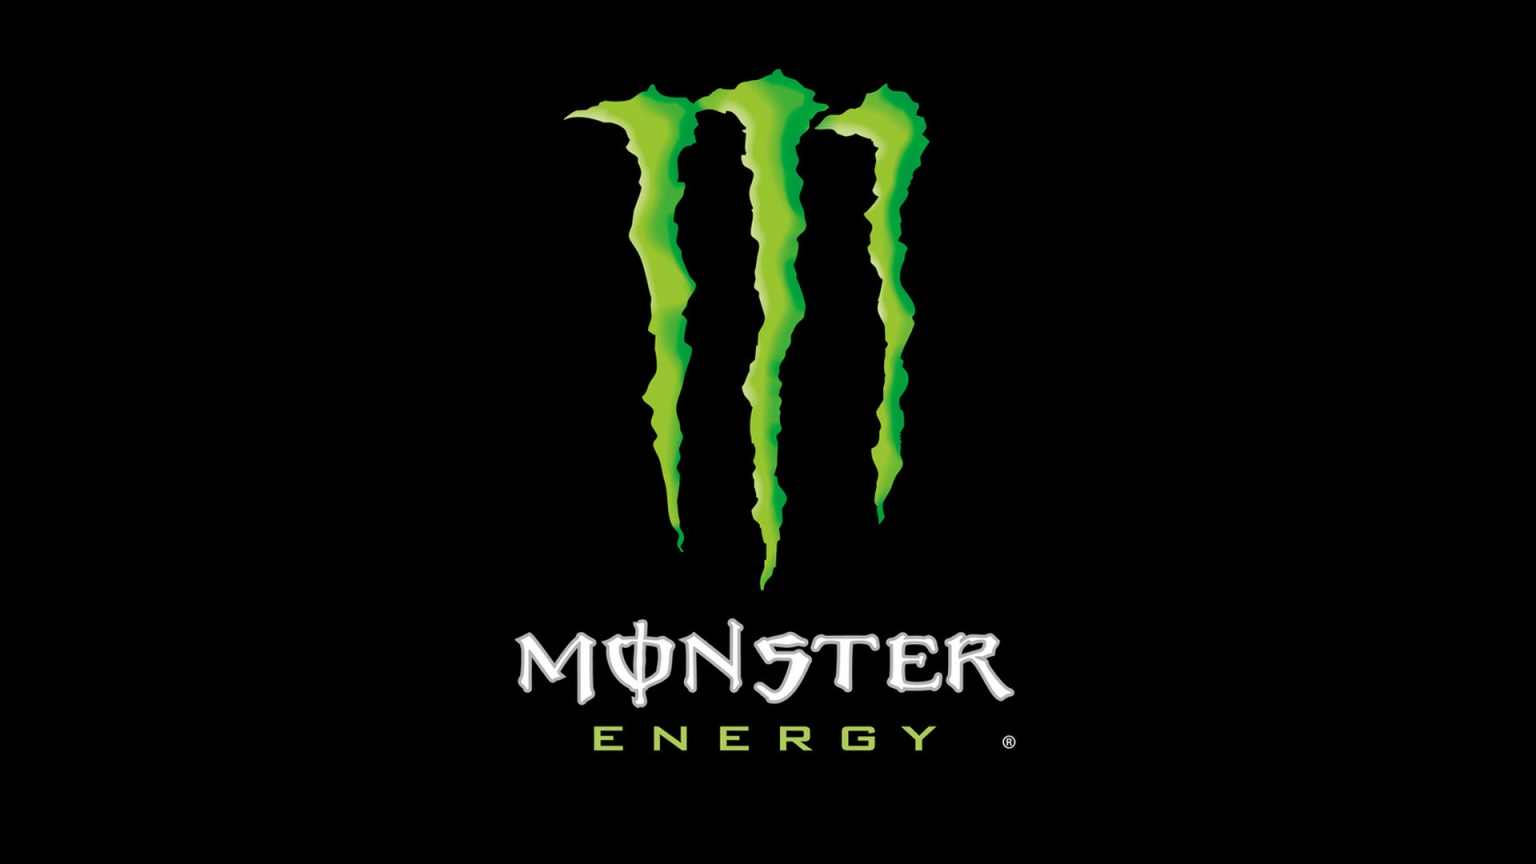 Monster Energy Drink Logo for 1536 x 864 HDTV resolution